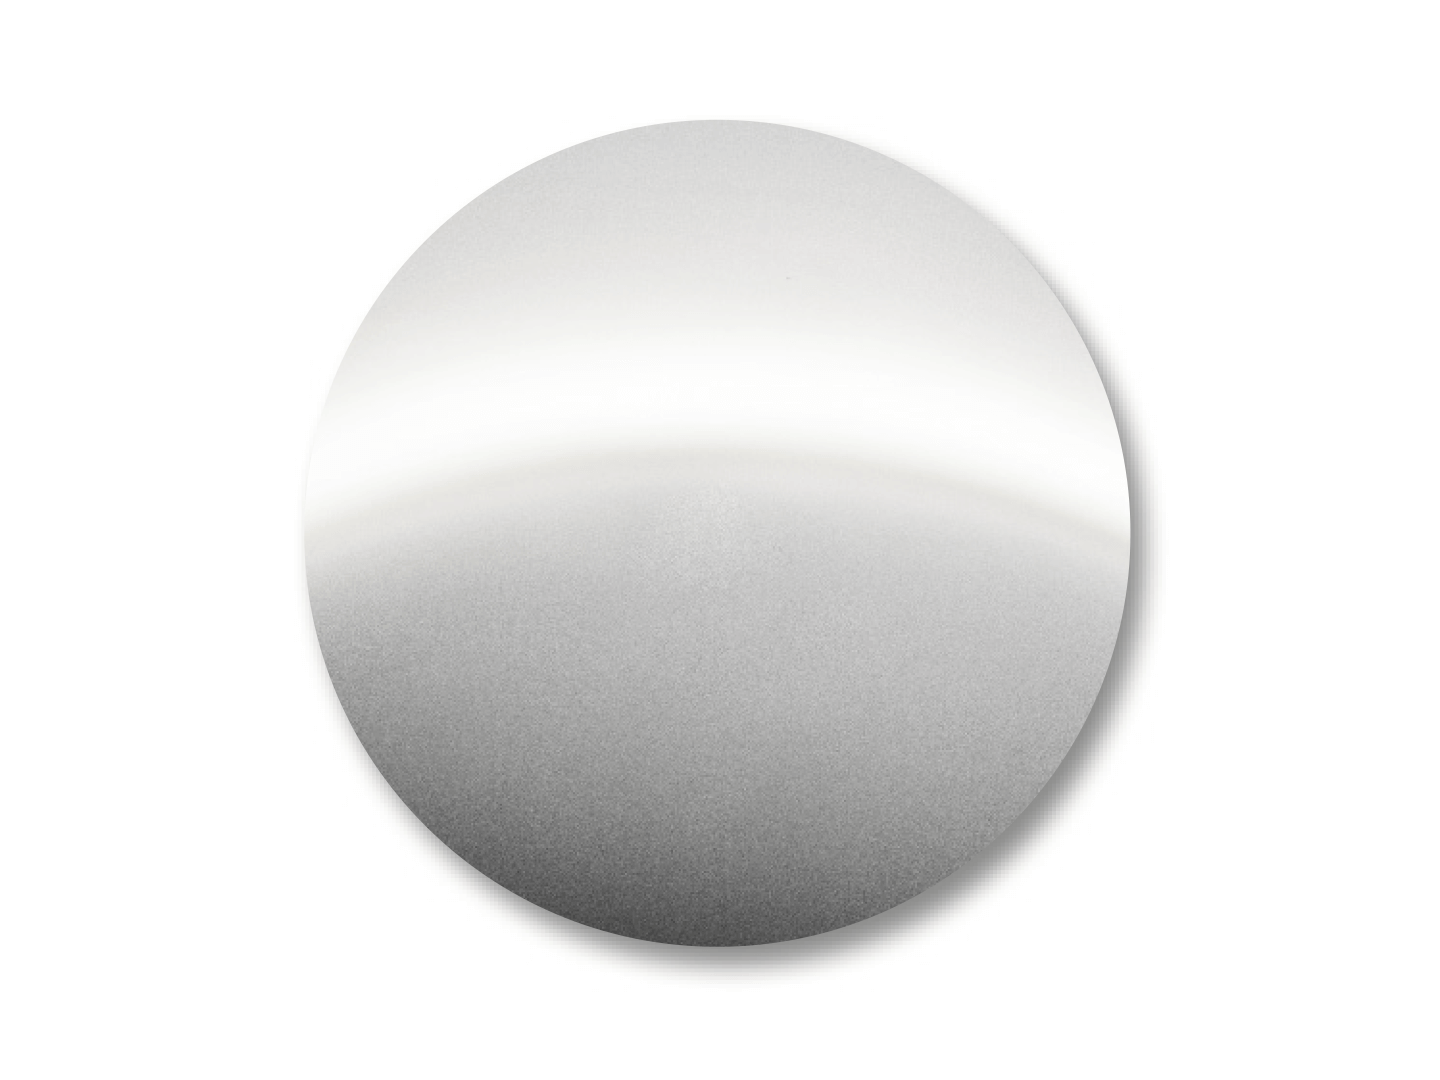 DuraVision Mirror Gümüşün renk örneği. 